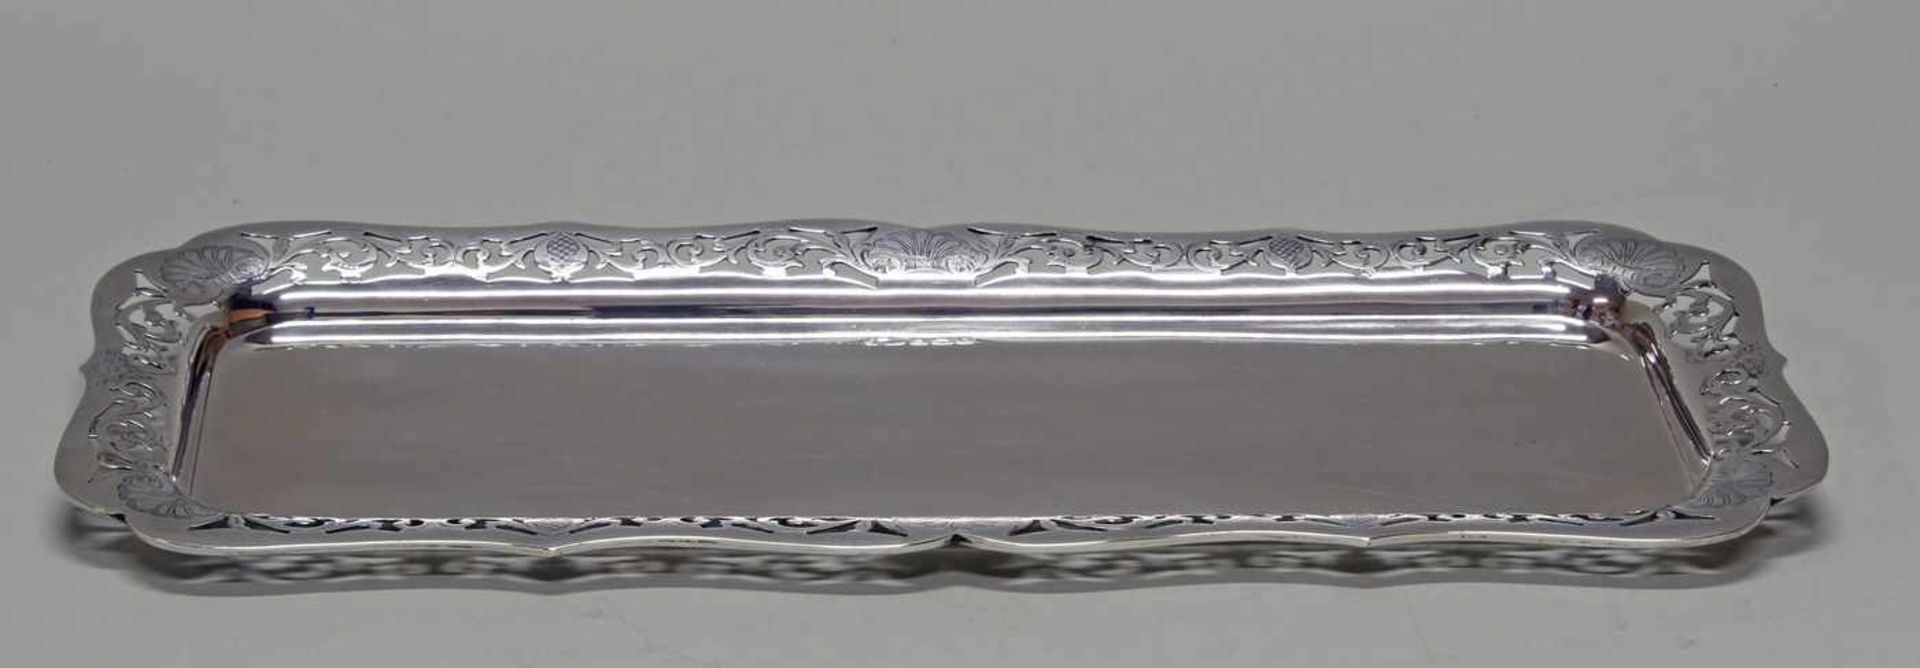 Platte, Silber 925, Birmingham, 1922, rechteckig, durchbrochener Rand mit Rankenzier, 40 x 17.5